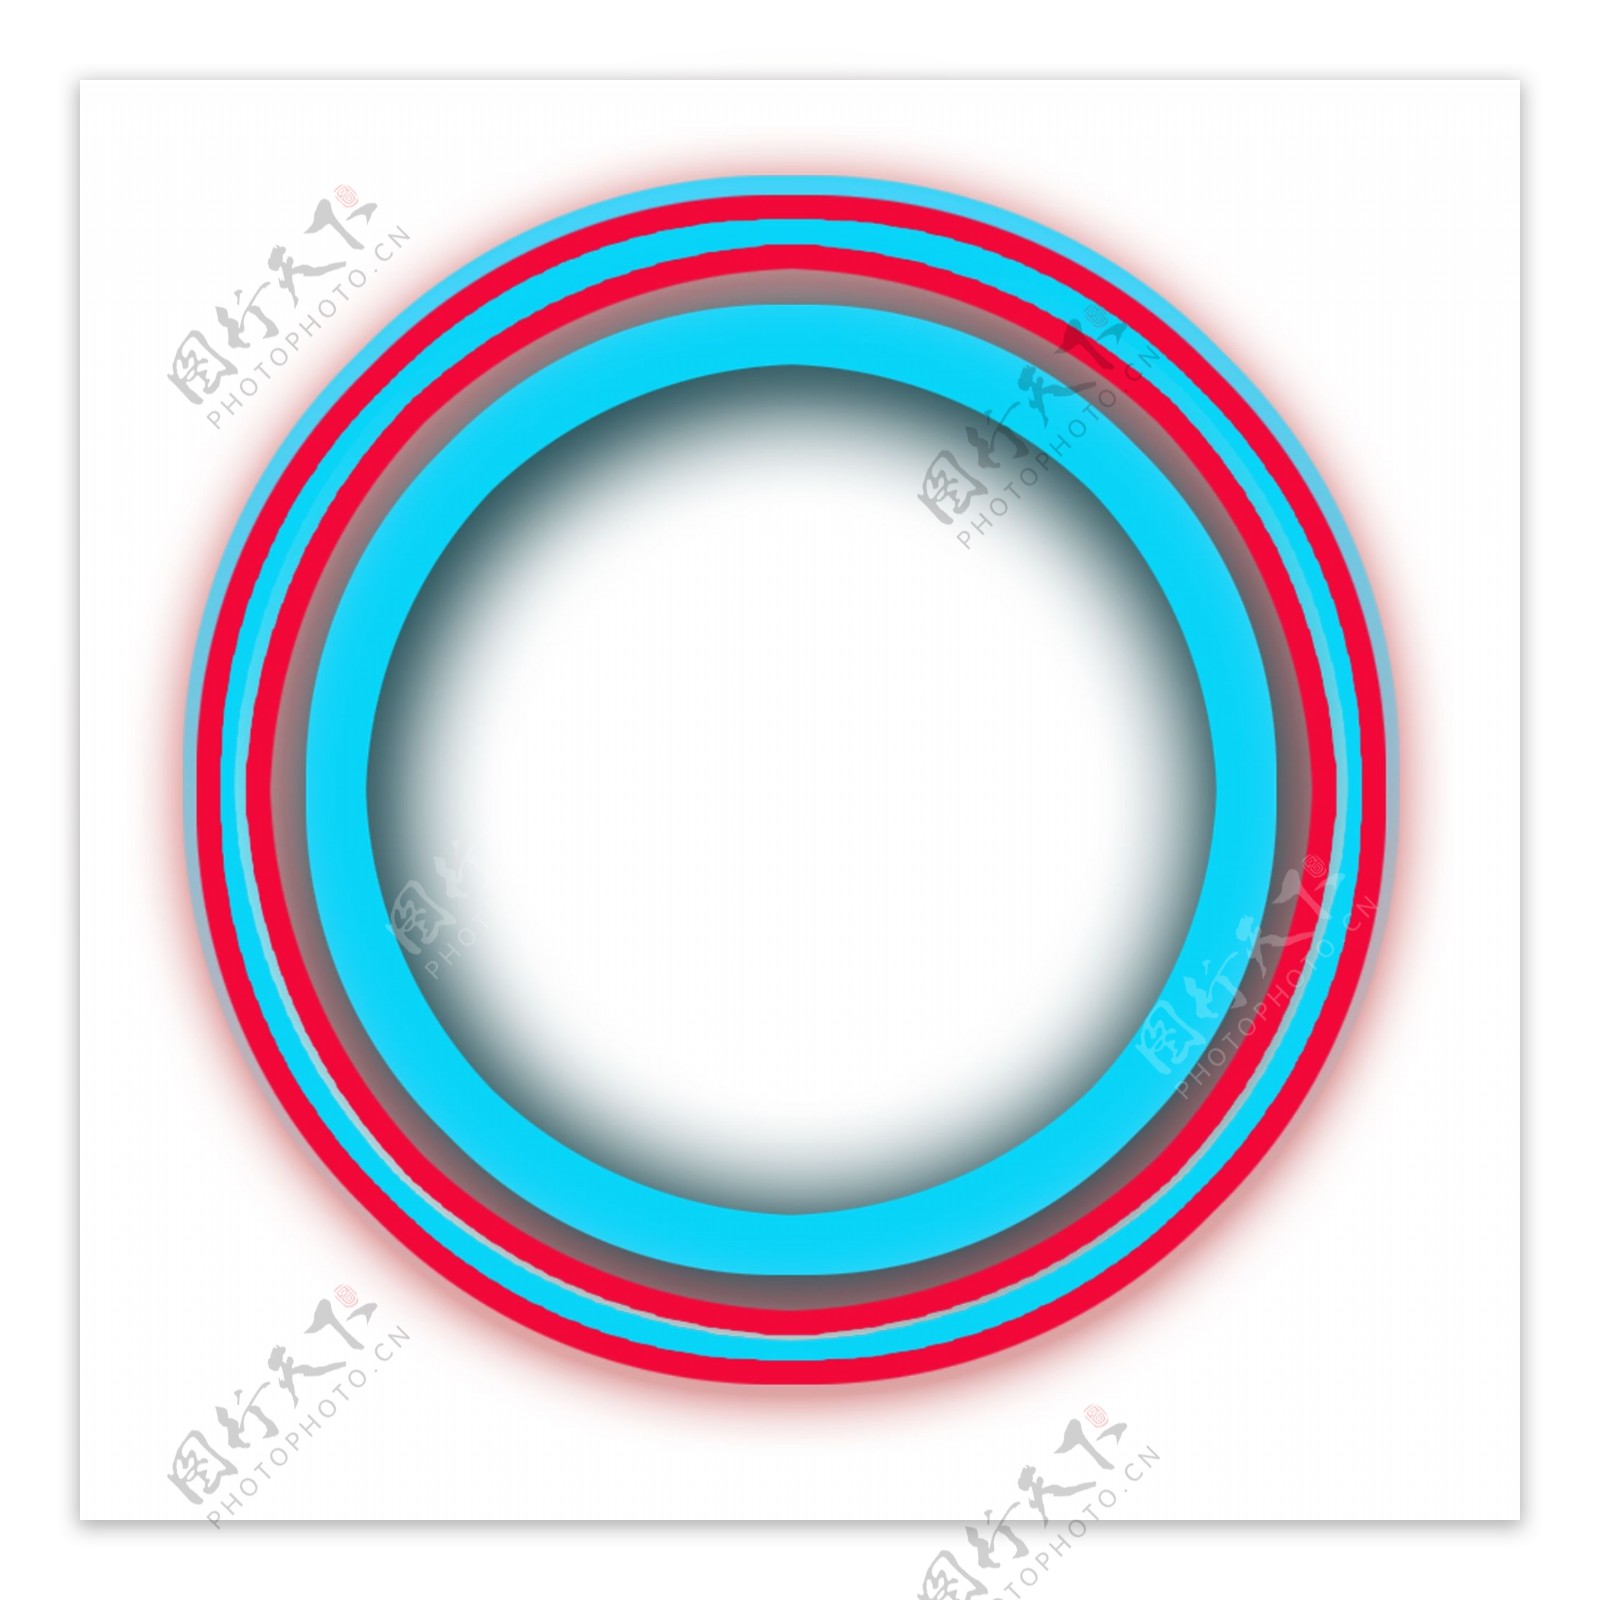 蓝红色相间的圆环素材